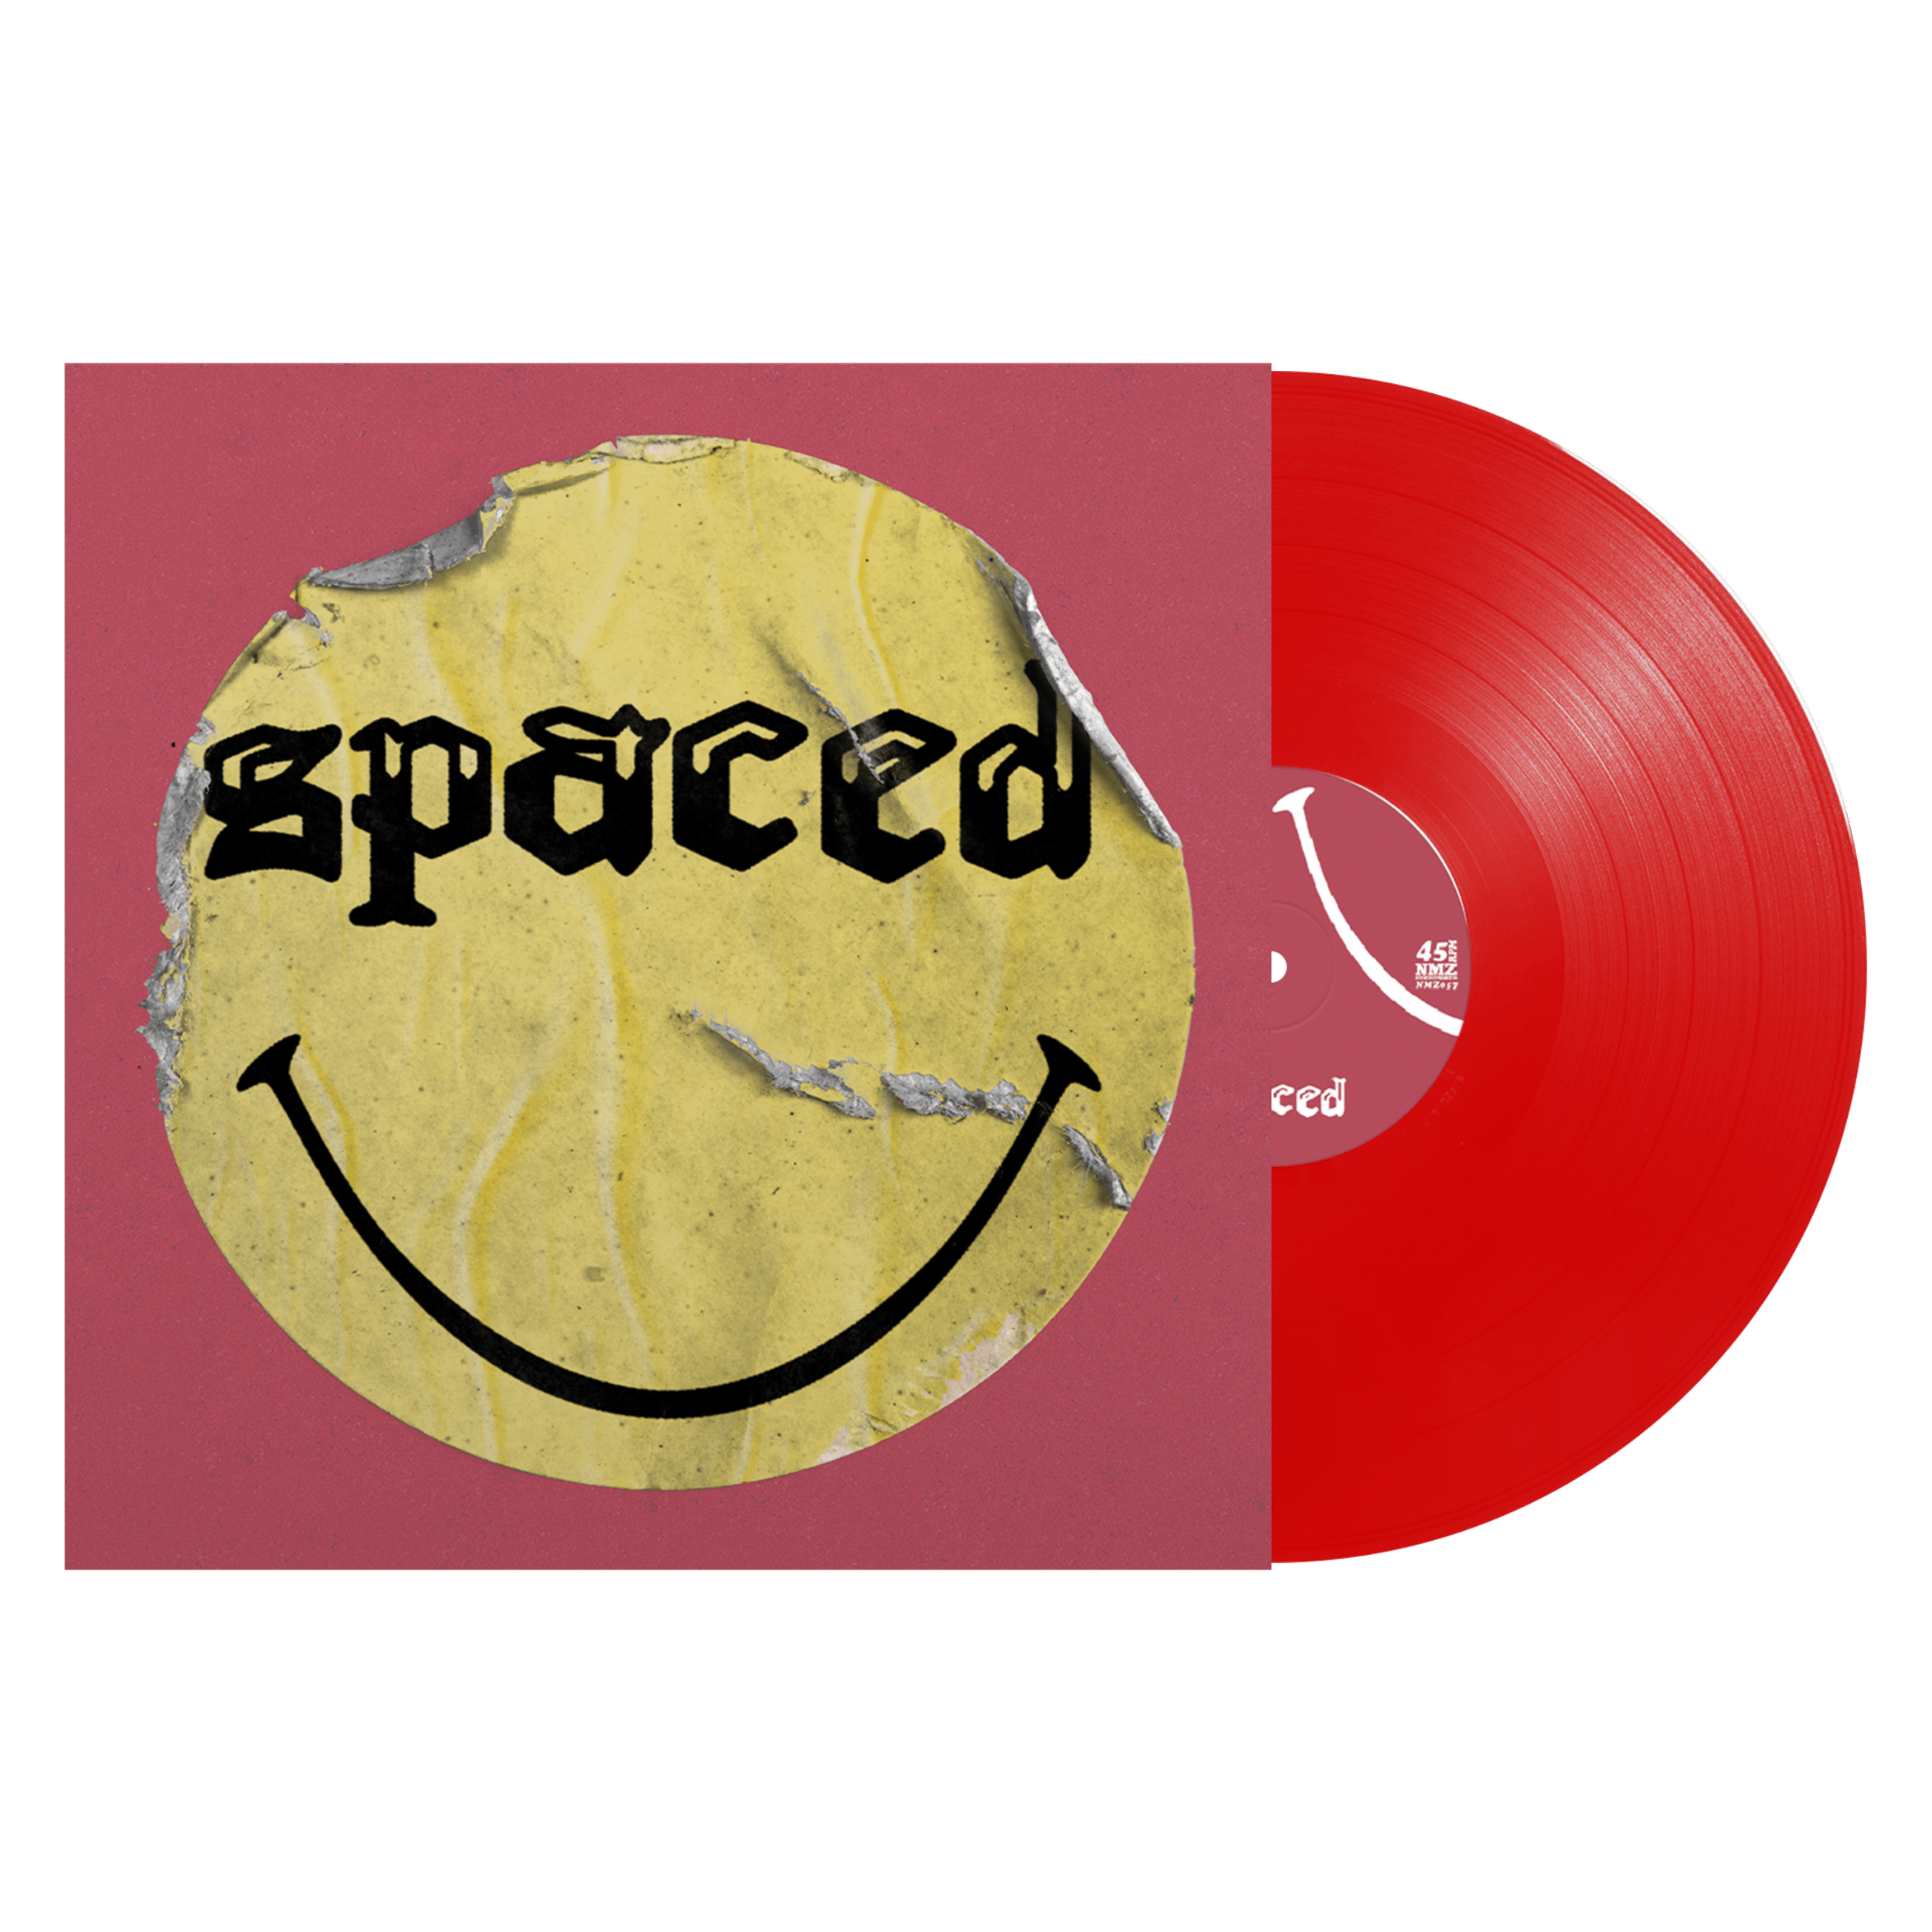 SPACED - Spaced Jams - Vinyl - Red.png